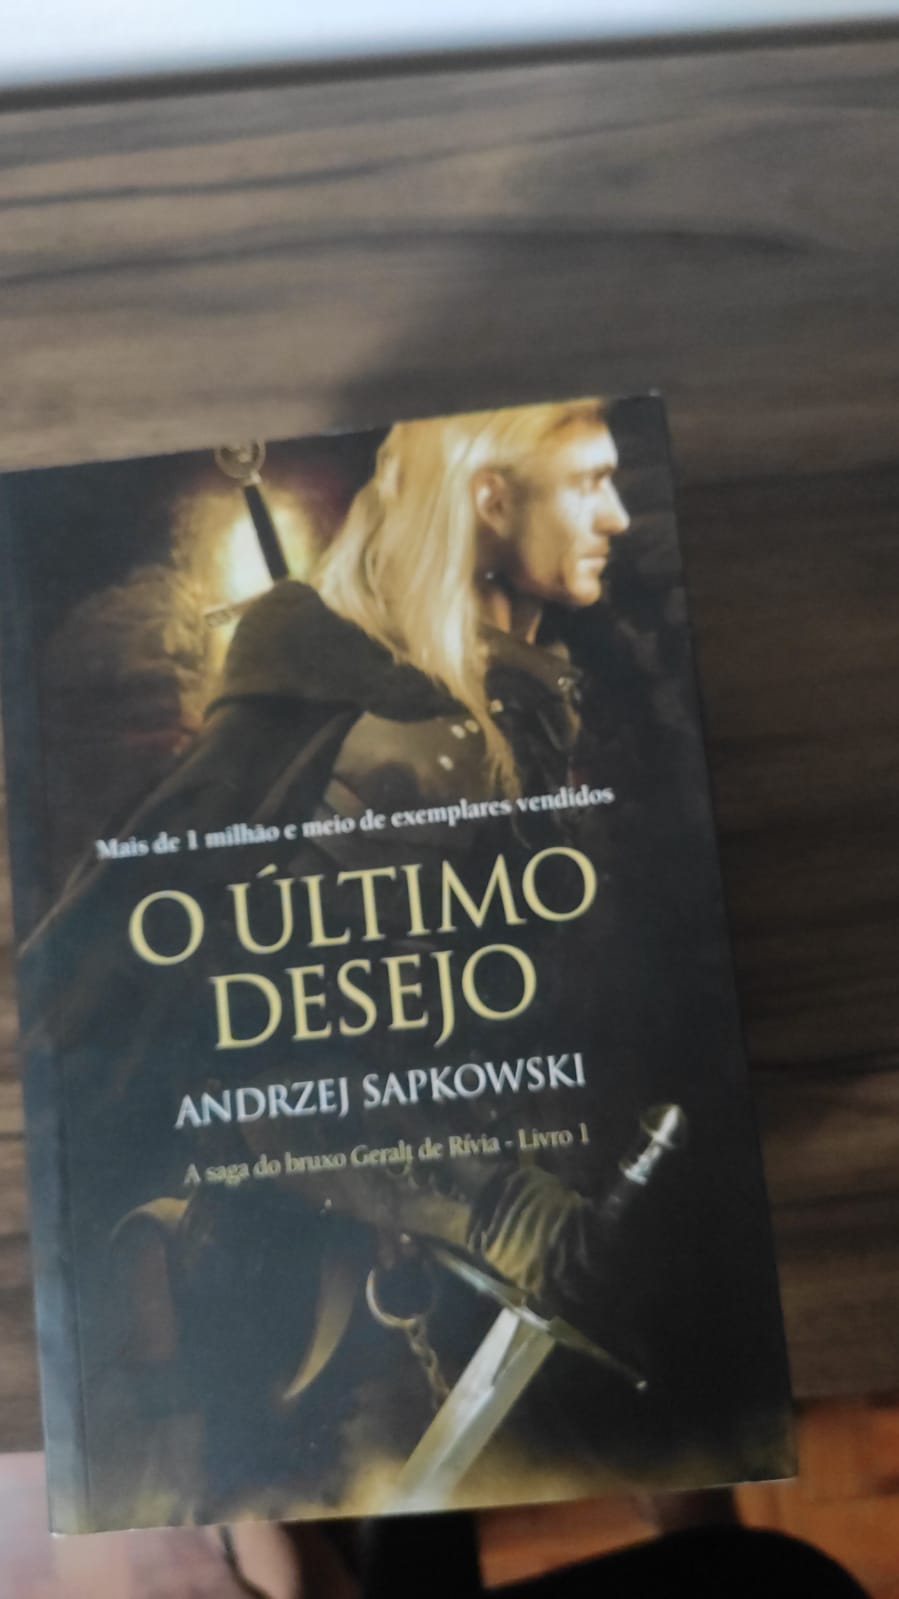 The Witcher Livro 6 — A Torre da Andorinha